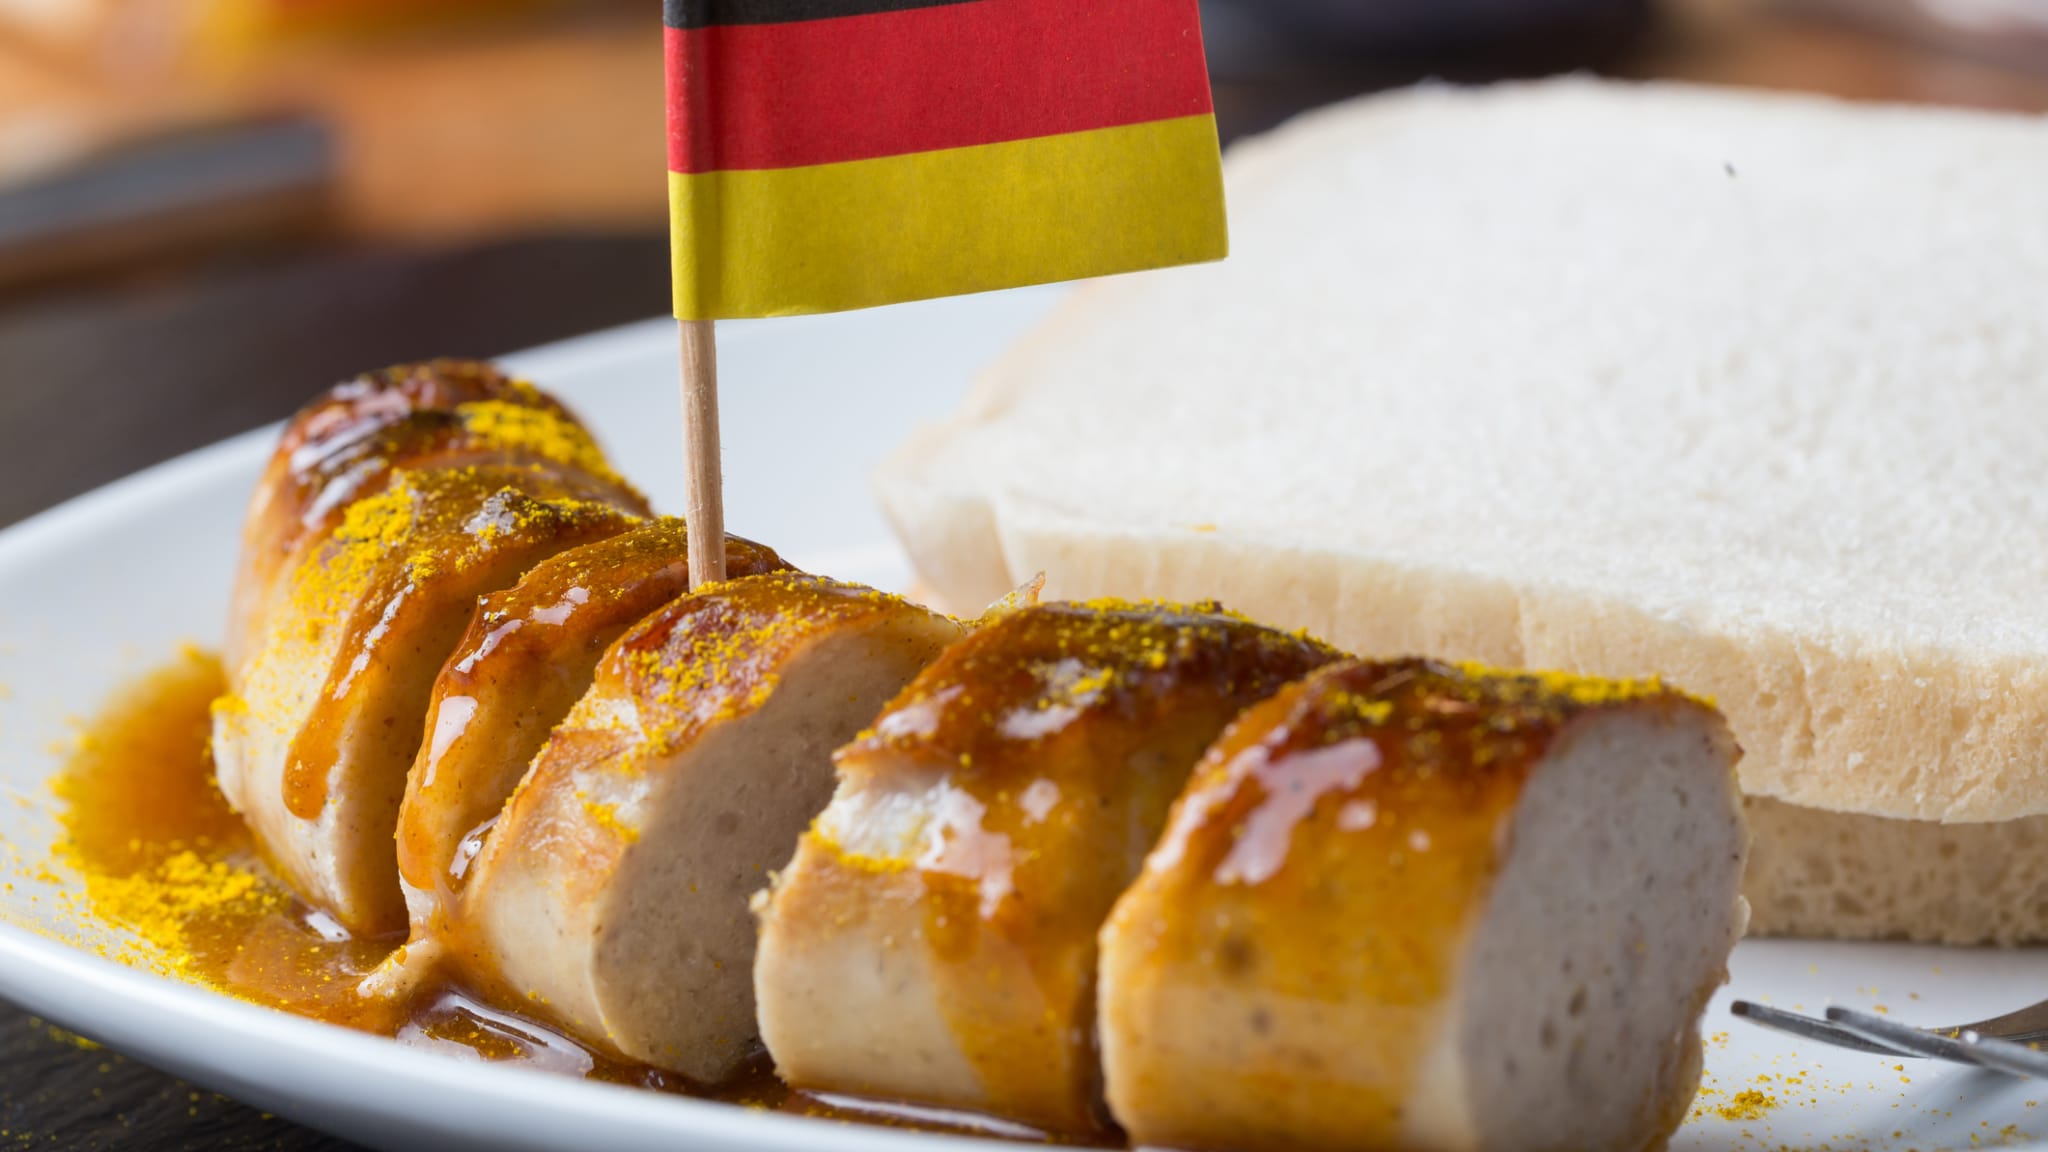 Eine Currywurst mit einer deutschen Flagge © Teka77/iStock / Getty Images Plus via Getty Images